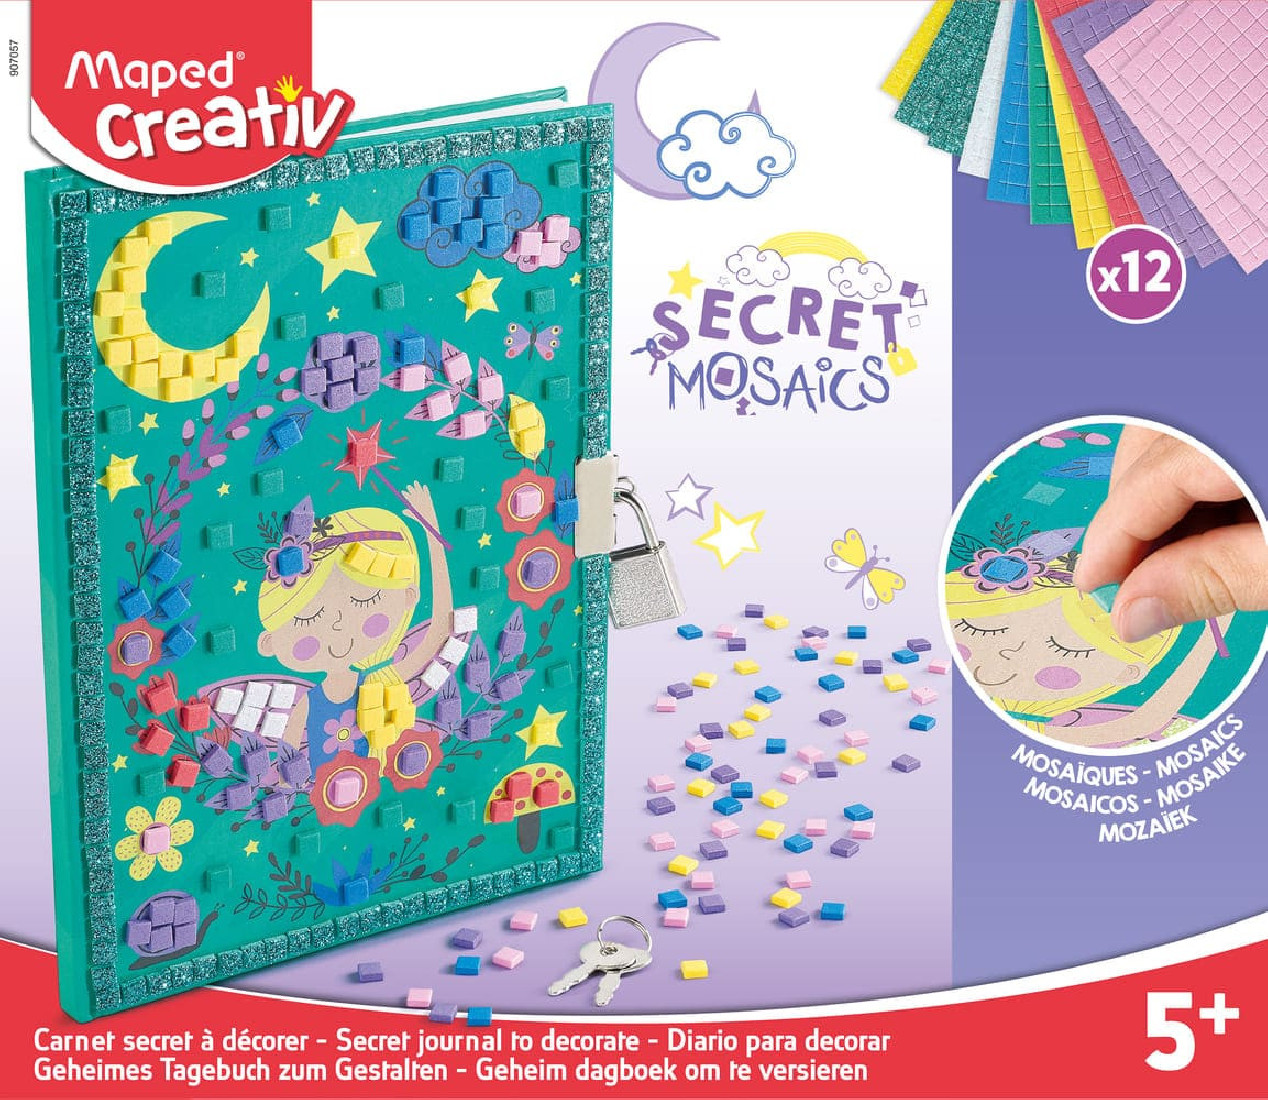 Μυστικό ημερολόγιο Μωσαϊκό Secret Mosaics 907057 Creative Maped